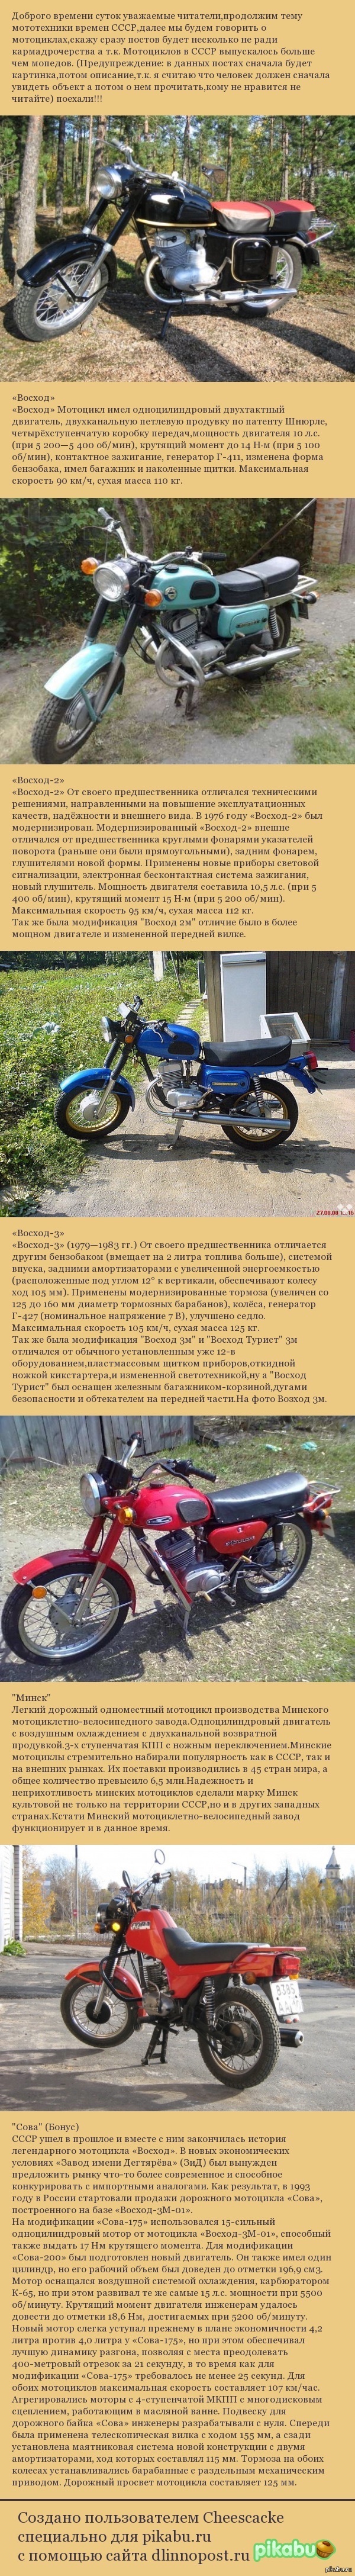   3    <a href="http://pikabu.ru/story/nostalgiya_2974265">http://pikabu.ru/story/_2974265</a> -1   <a href="http://pikabu.ru/story/nostalgiya_chast_2_2975075">http://pikabu.ru/story/_2975075</a> -2 